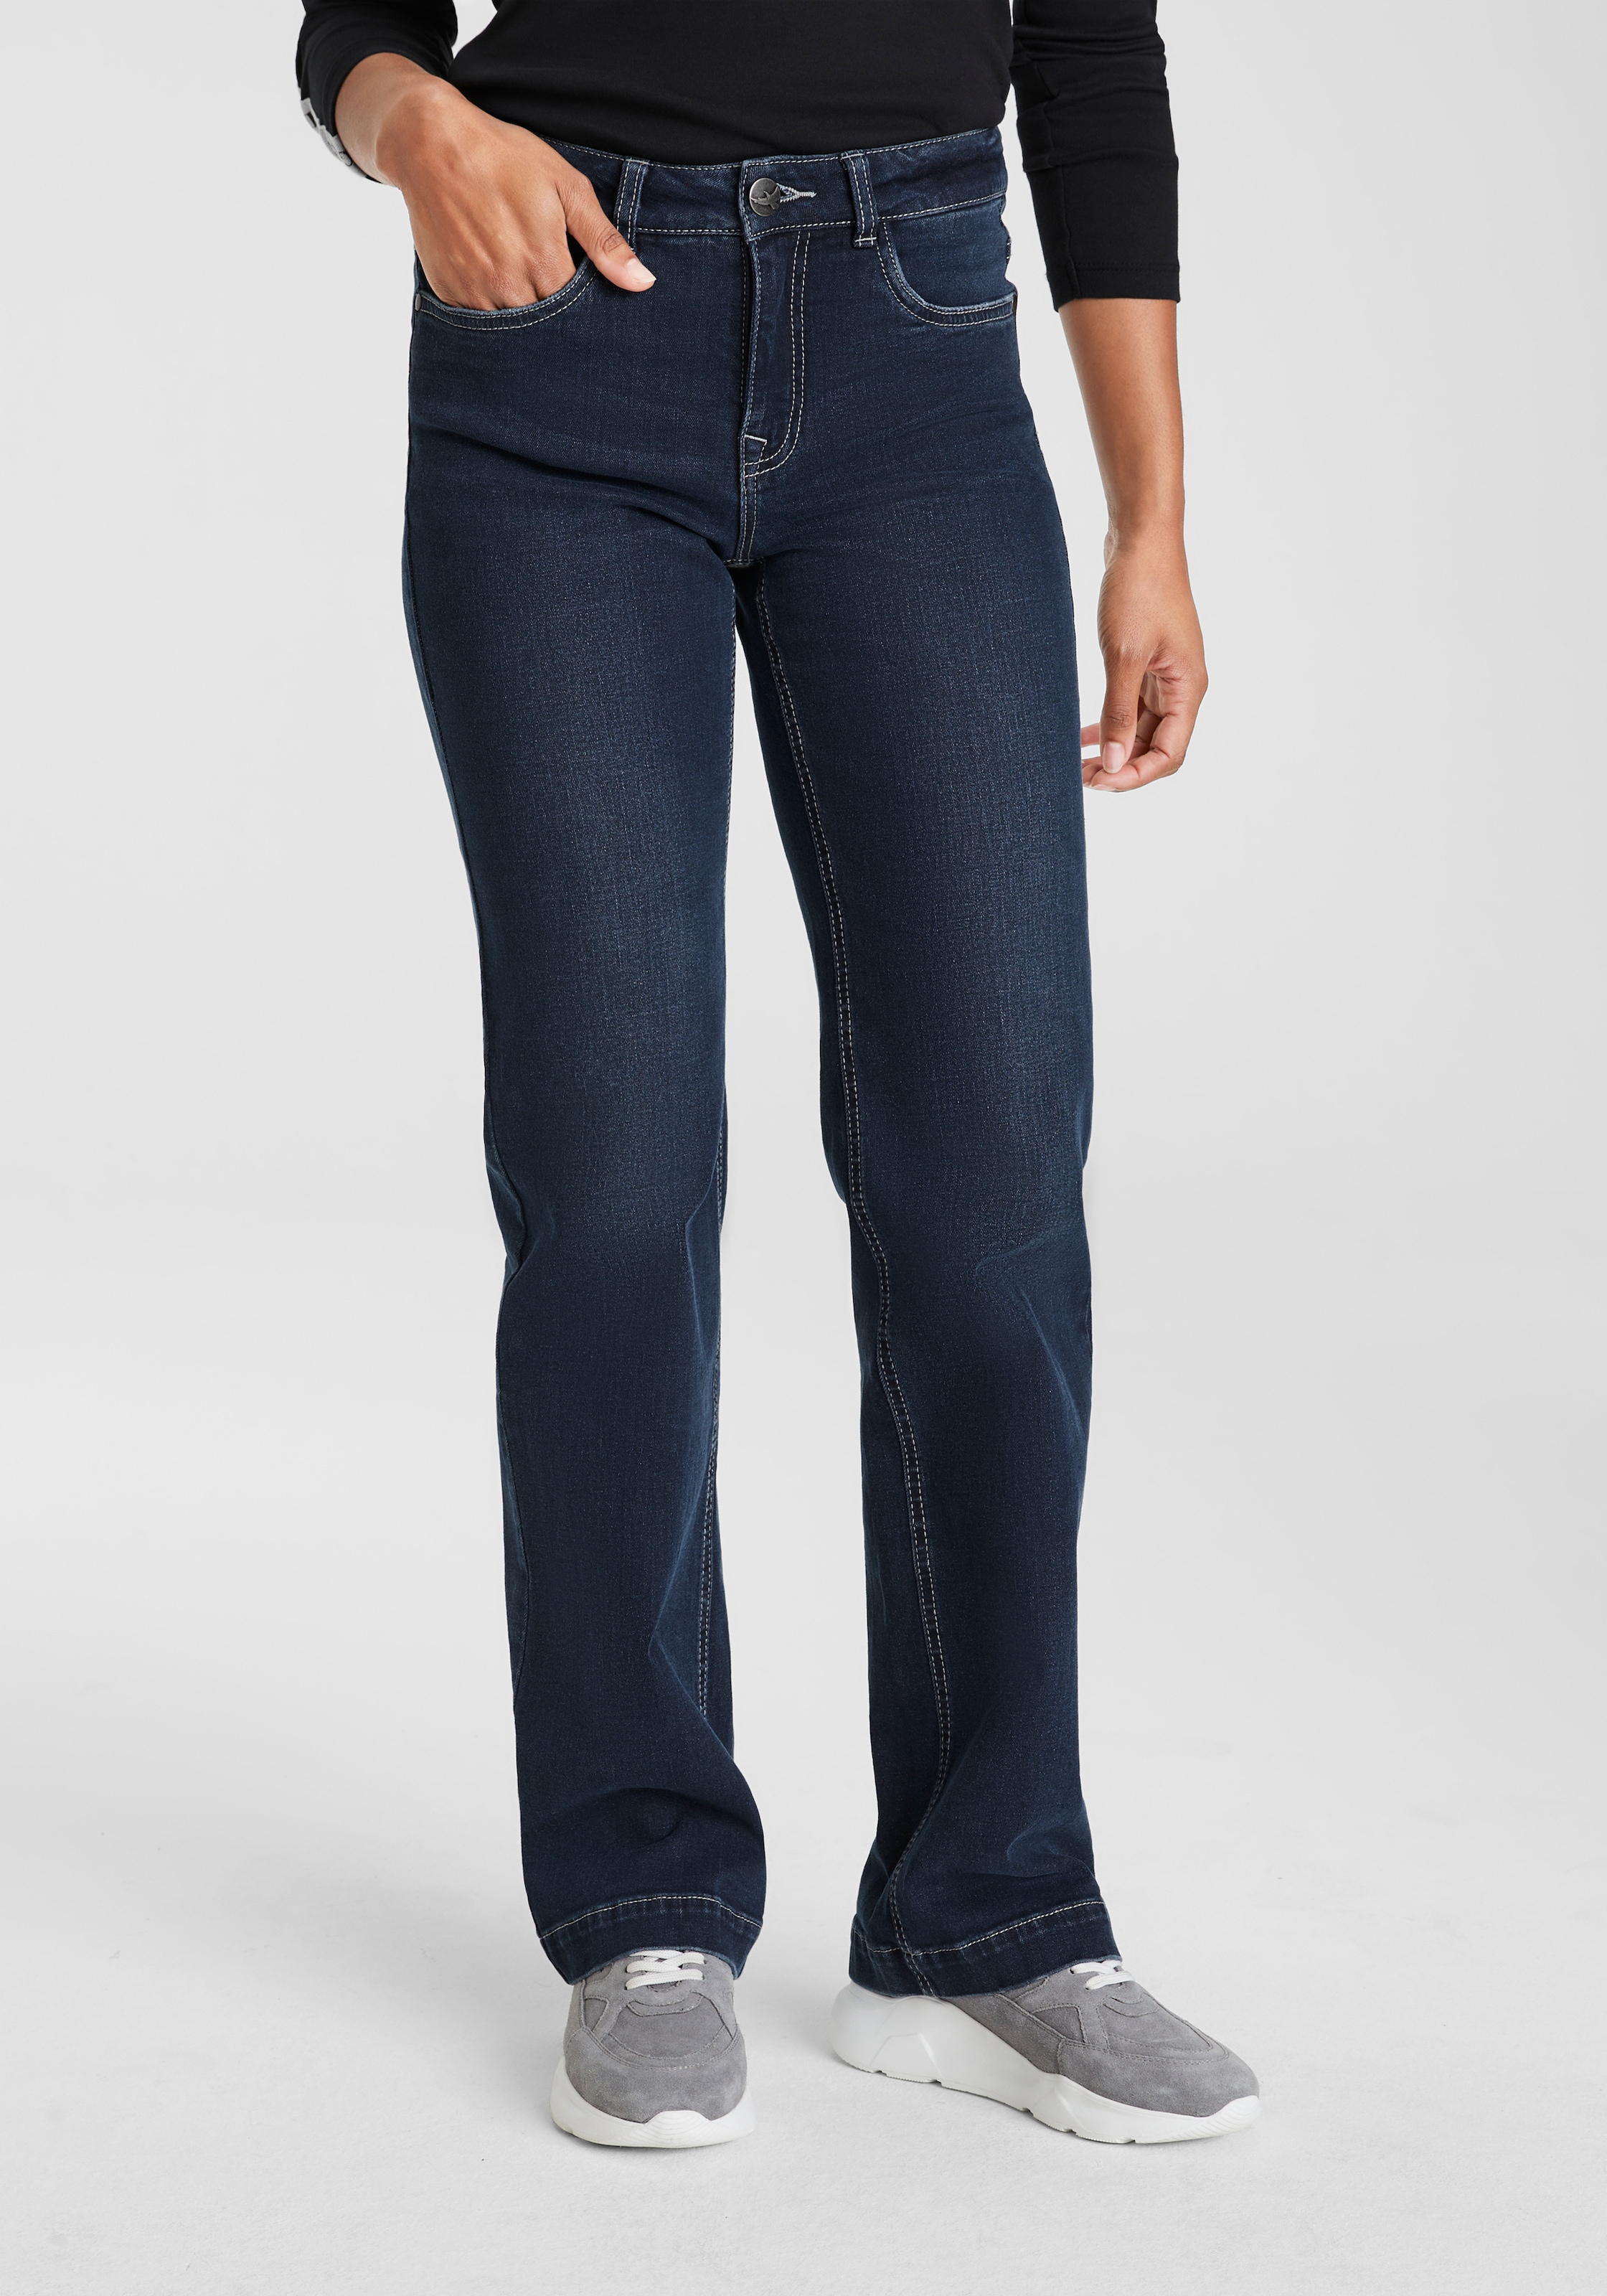 günstige Jeans | SALE Arizona Angebote %% & Outlet BAUR